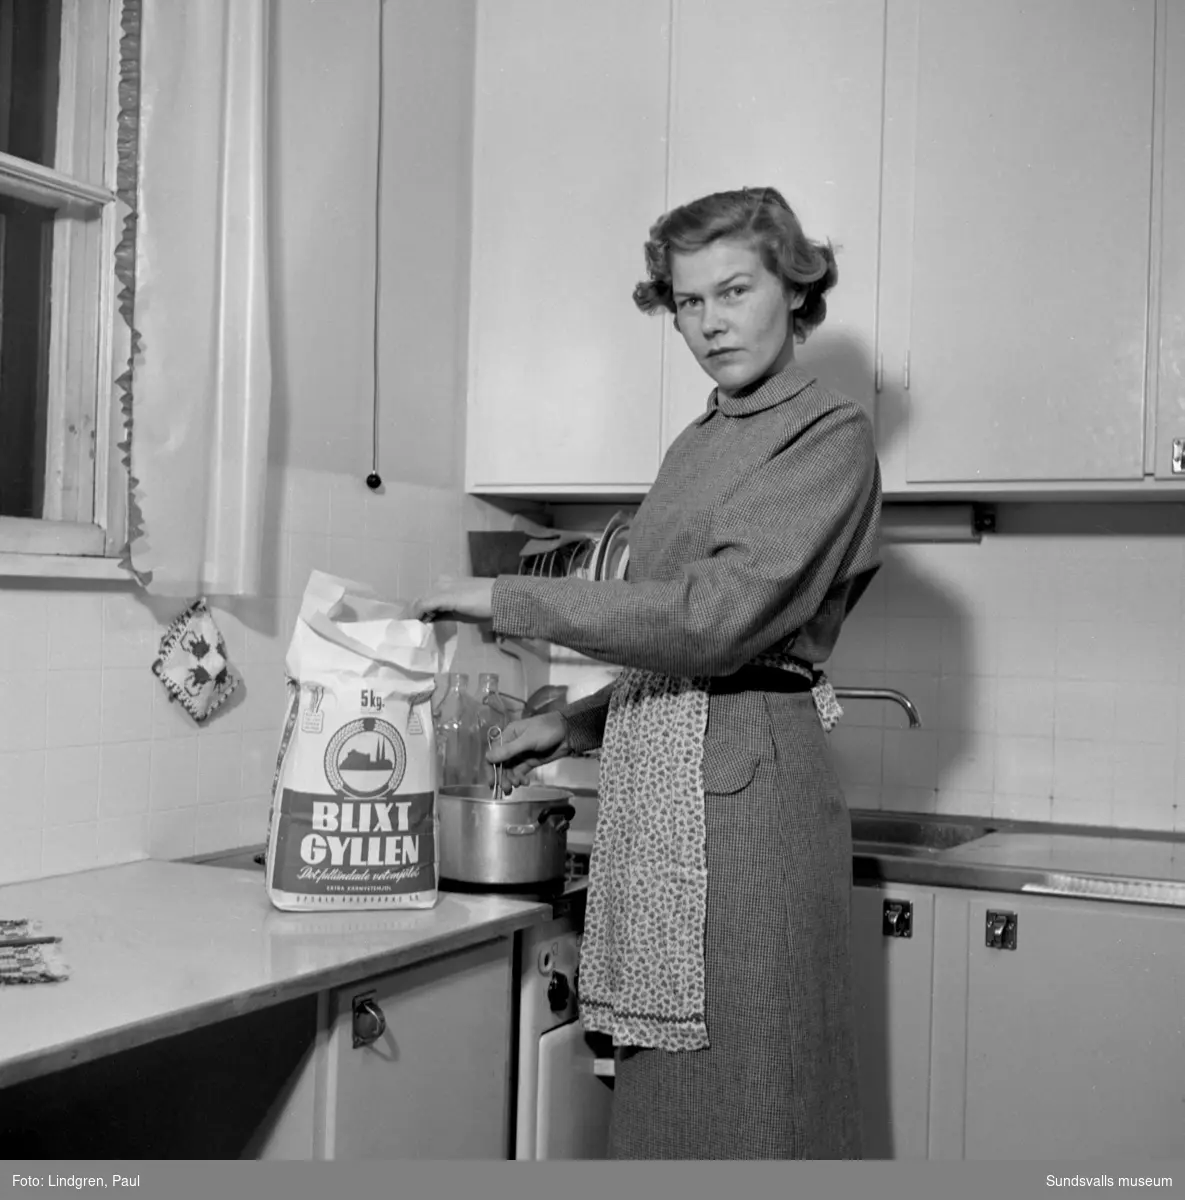 Vad ska vi dra in på? Från artikel i ST om bekymrade husmödrar inför prishöjning av mejerivaror. Karin Strömberg (bild 1) och fru Birgit Iwefors (bild 2) i sina kök.